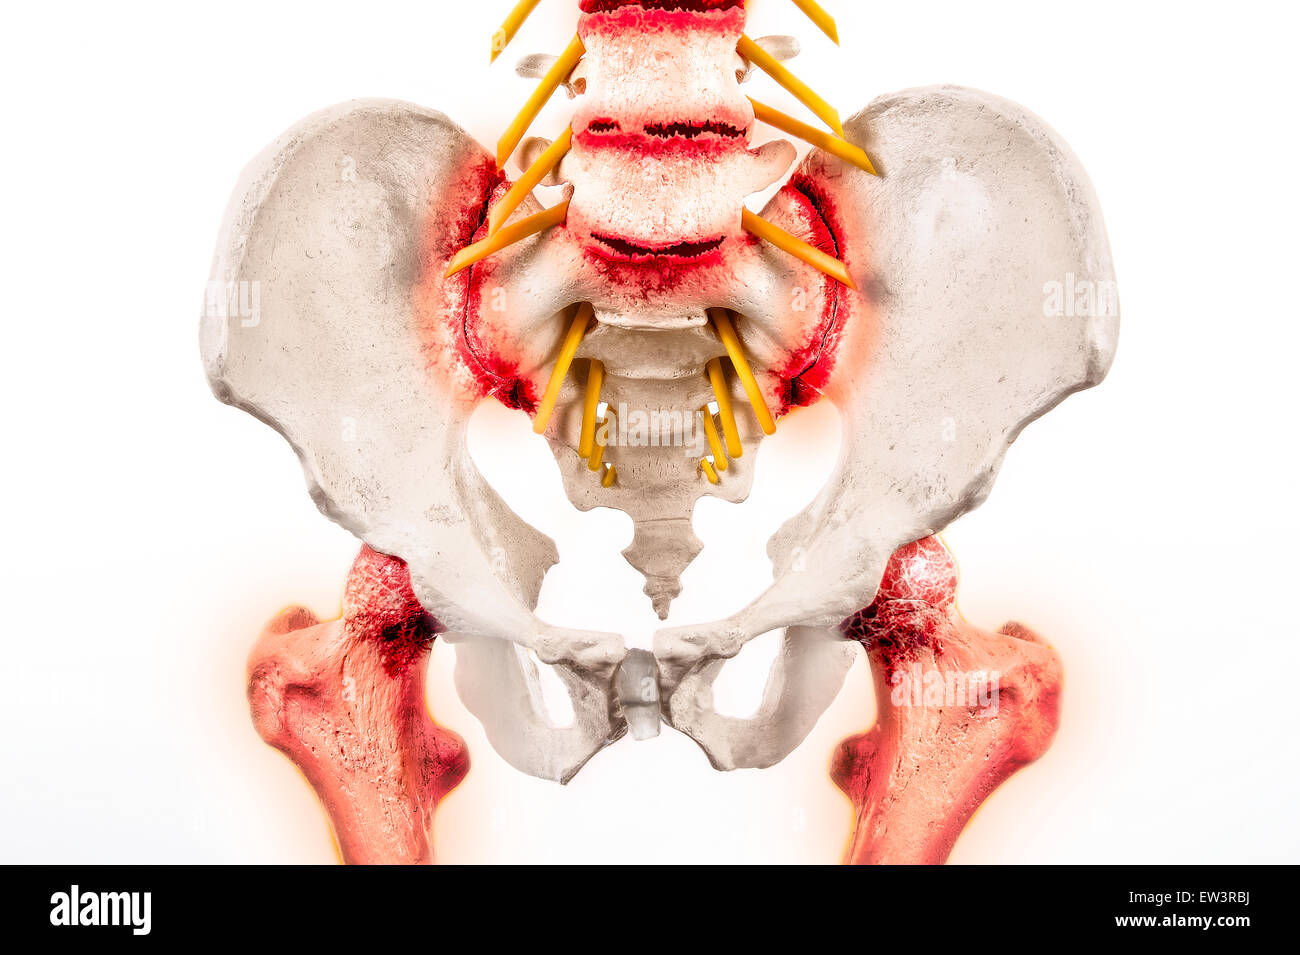 Grafico illustrativo della spondilite anchilosante - una forma degenerativa di artrite che colpiscono il spineand sacroiliac giunti. Foto Stock